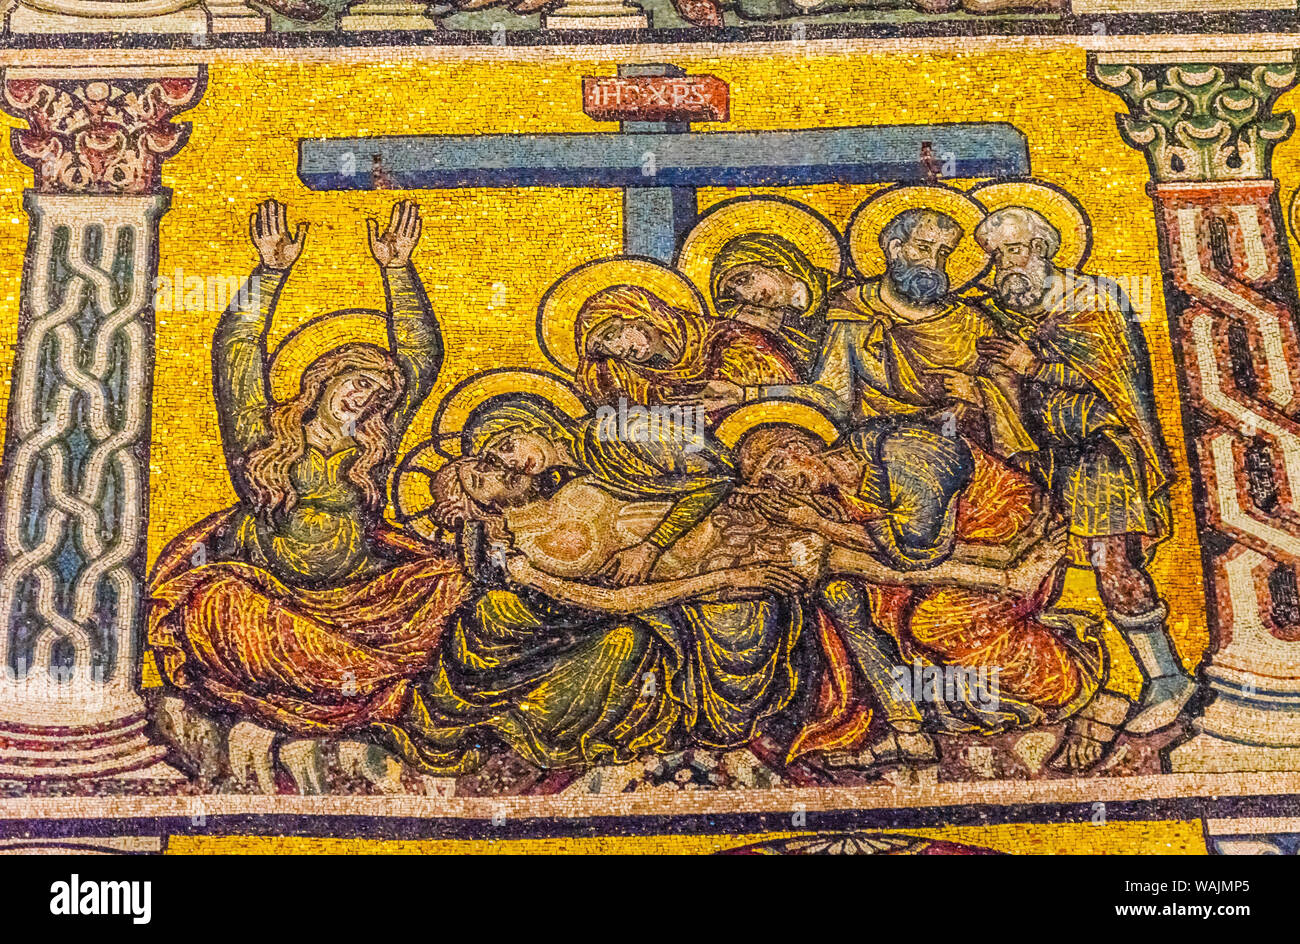 Pieta Maria Christus Abfahrt Kreuz Mosaik. Taufkapelle von Saint John, Florenz, Italien. Baptisterium erstellt 1050 bis 1150, Mosaiken, die von Pater Jacobus in 1200. Stockfoto